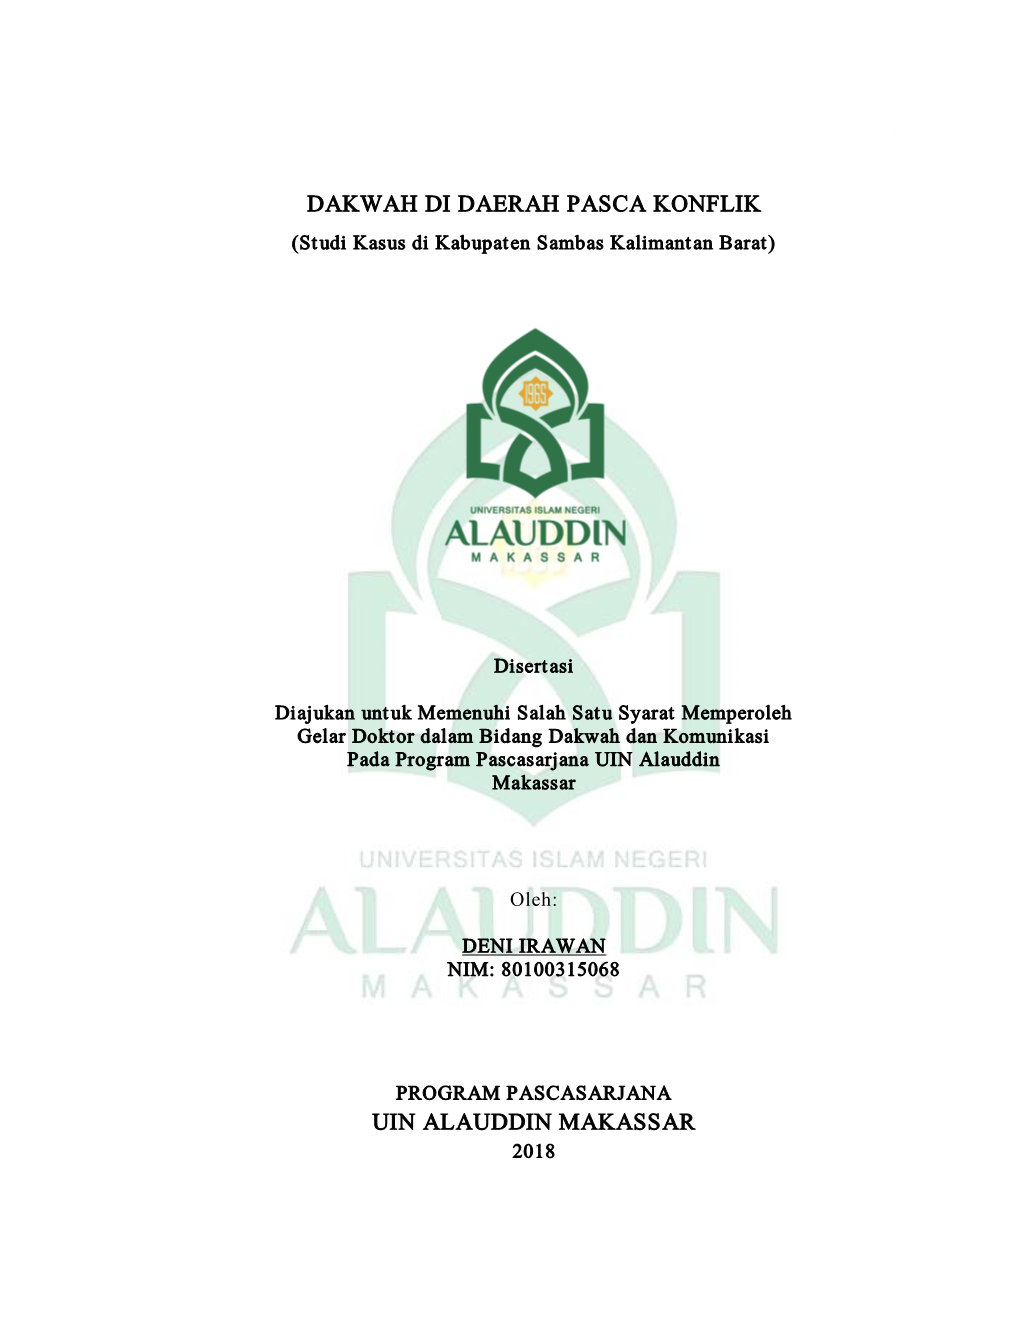 Dakwah Di Daerah Pasca Konflik Uin Alauddin Makassar